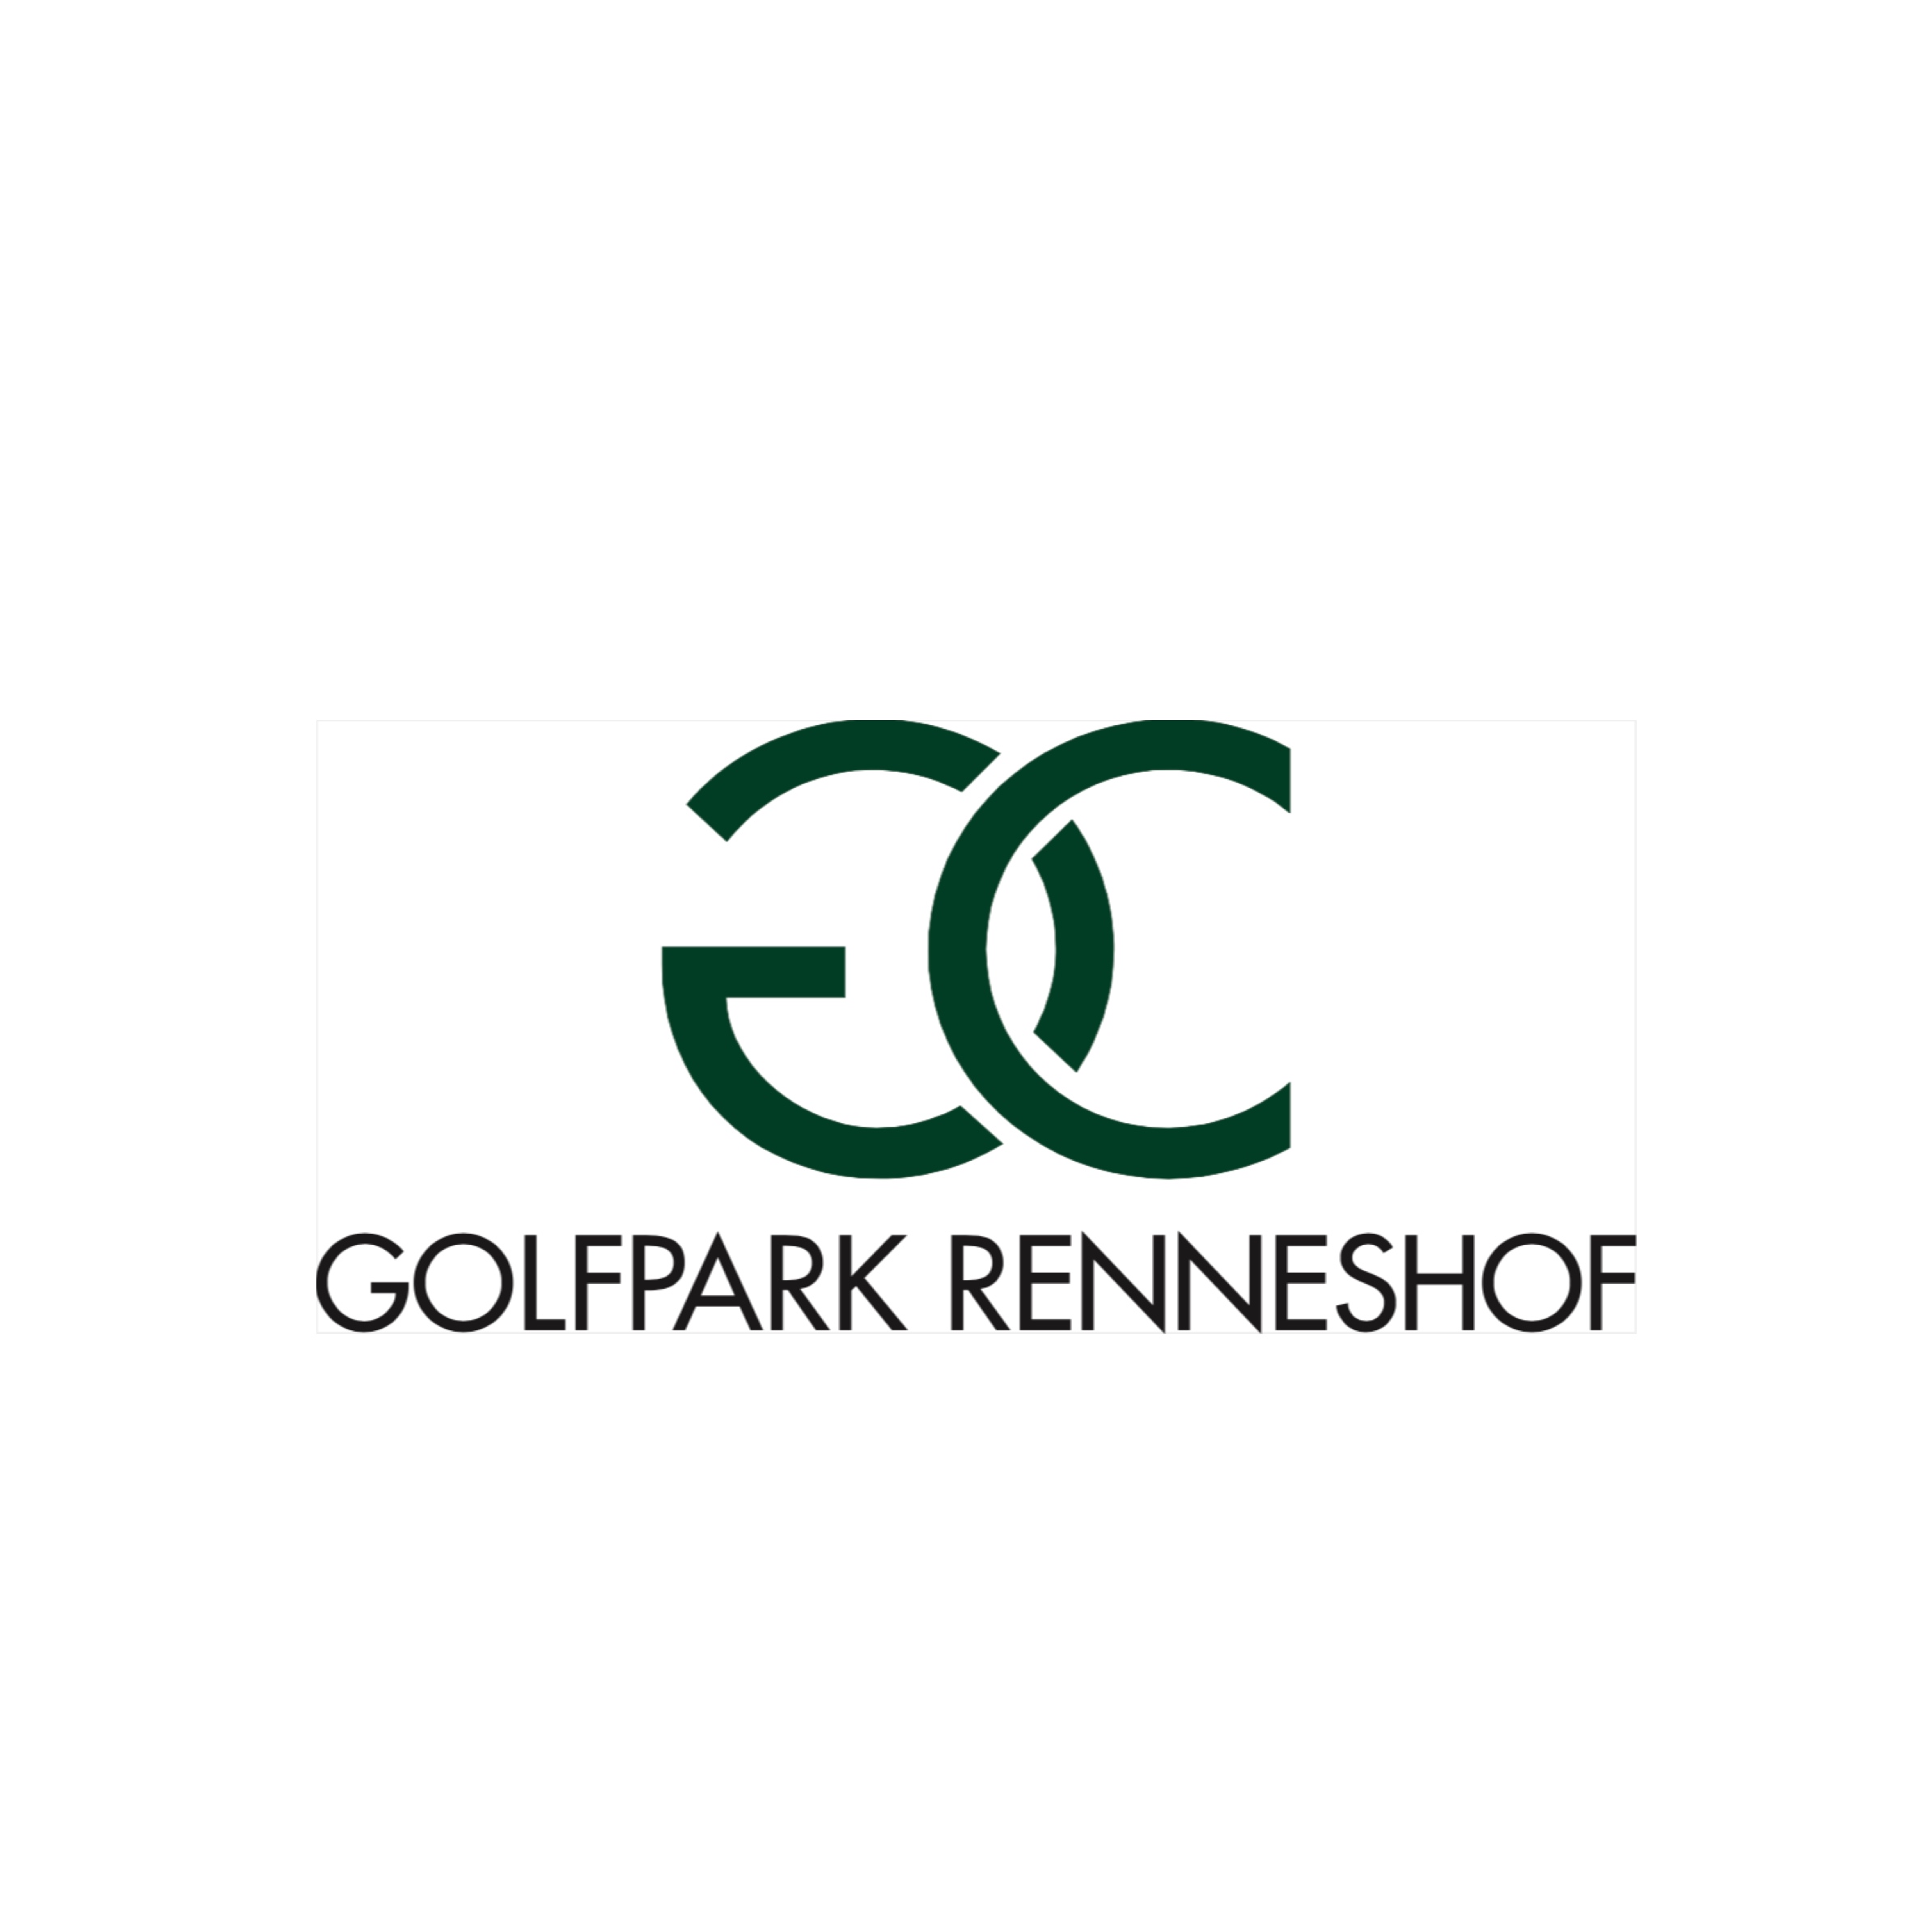 49. Renneshof (Golfpark Renneshof)